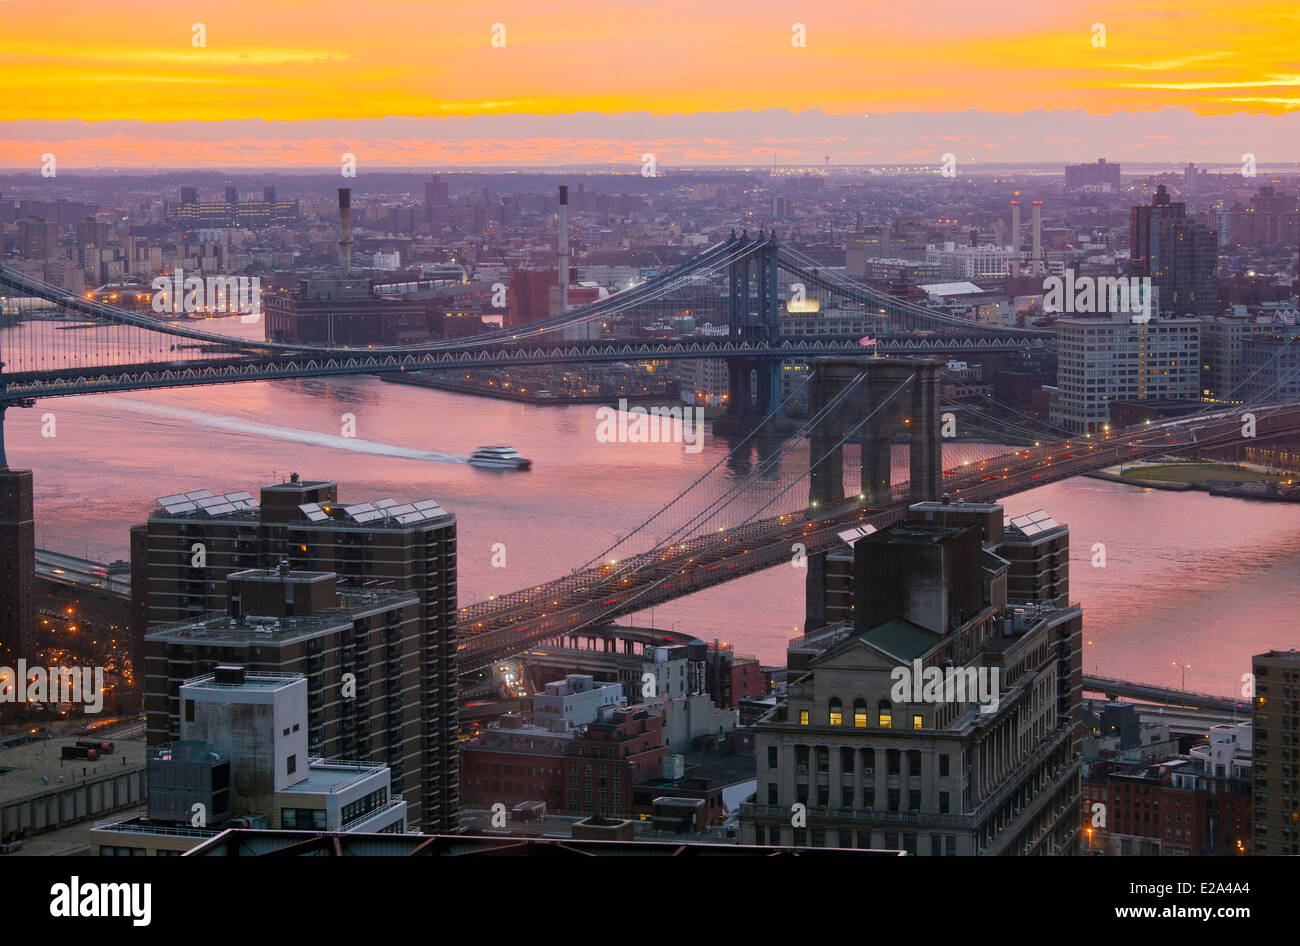 United States, New York, de Manhattan à Brooklyn, le pont de Brooklyn et Manhattan, pont au-dessus de l'East River, au lever du soleil Banque D'Images